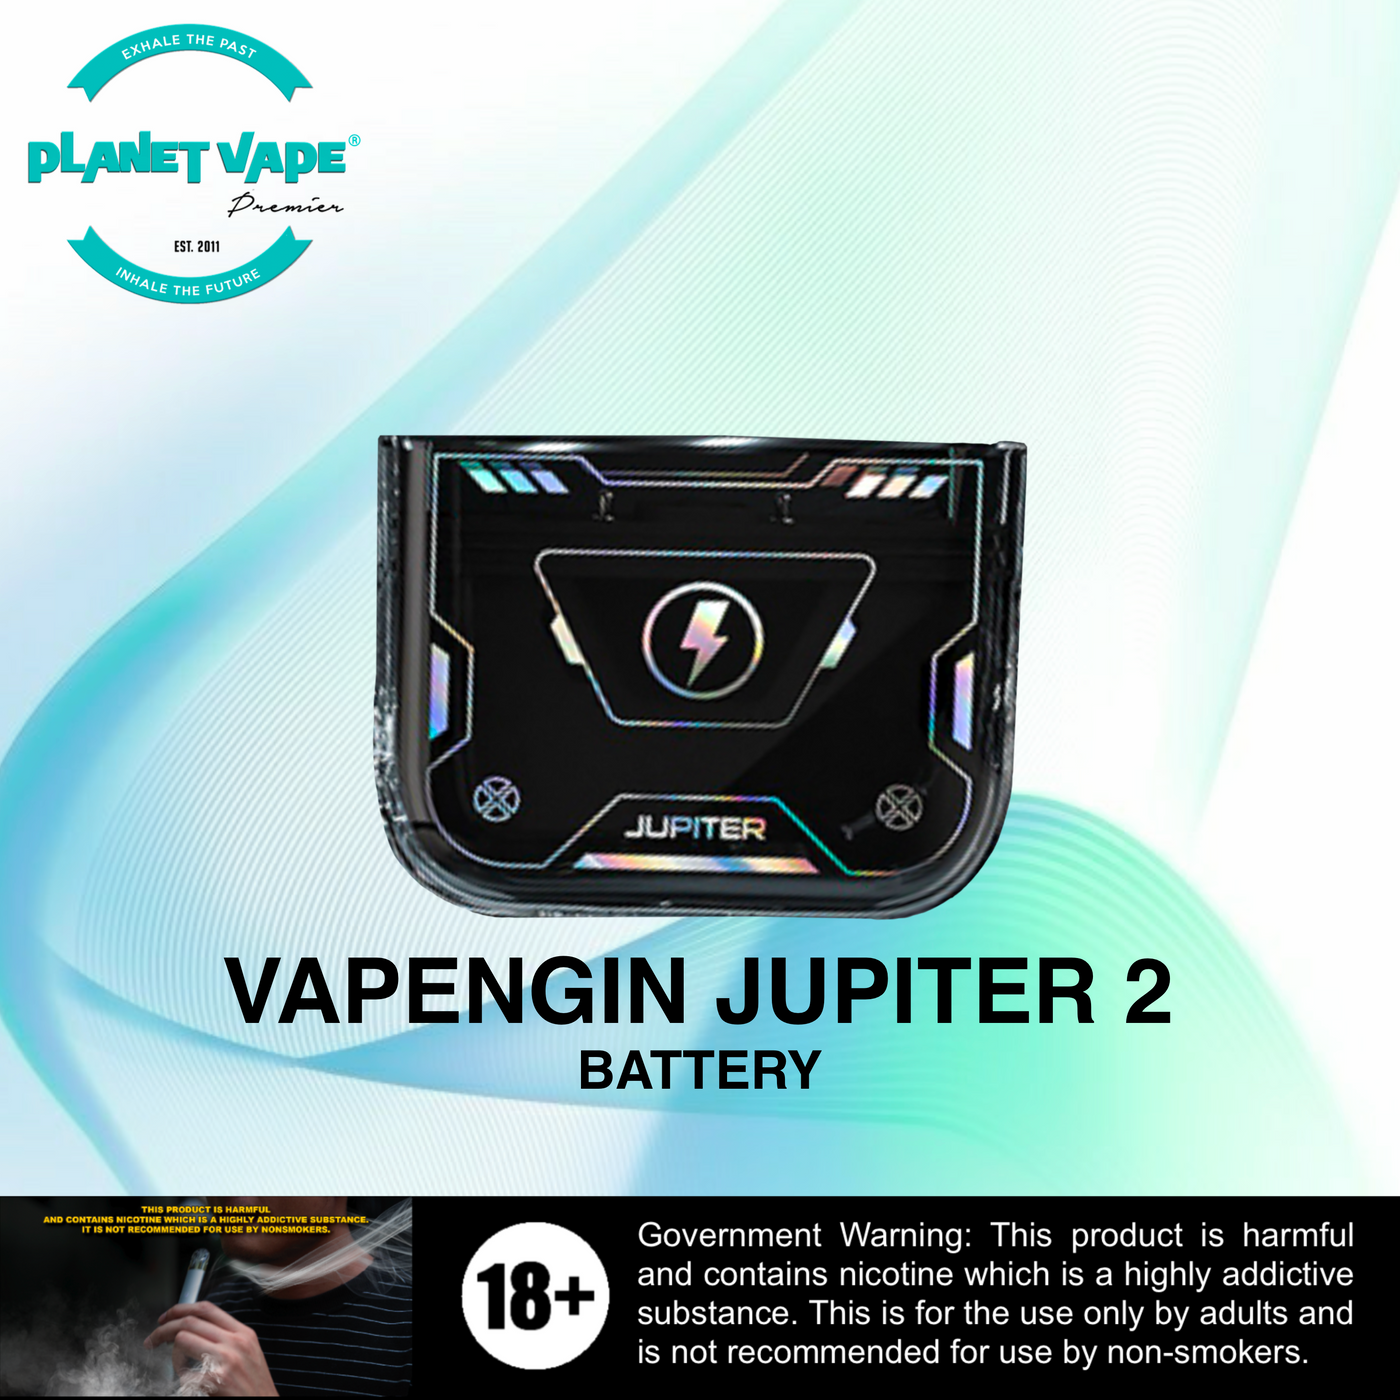 Vapengin Jupiter 2 Battery